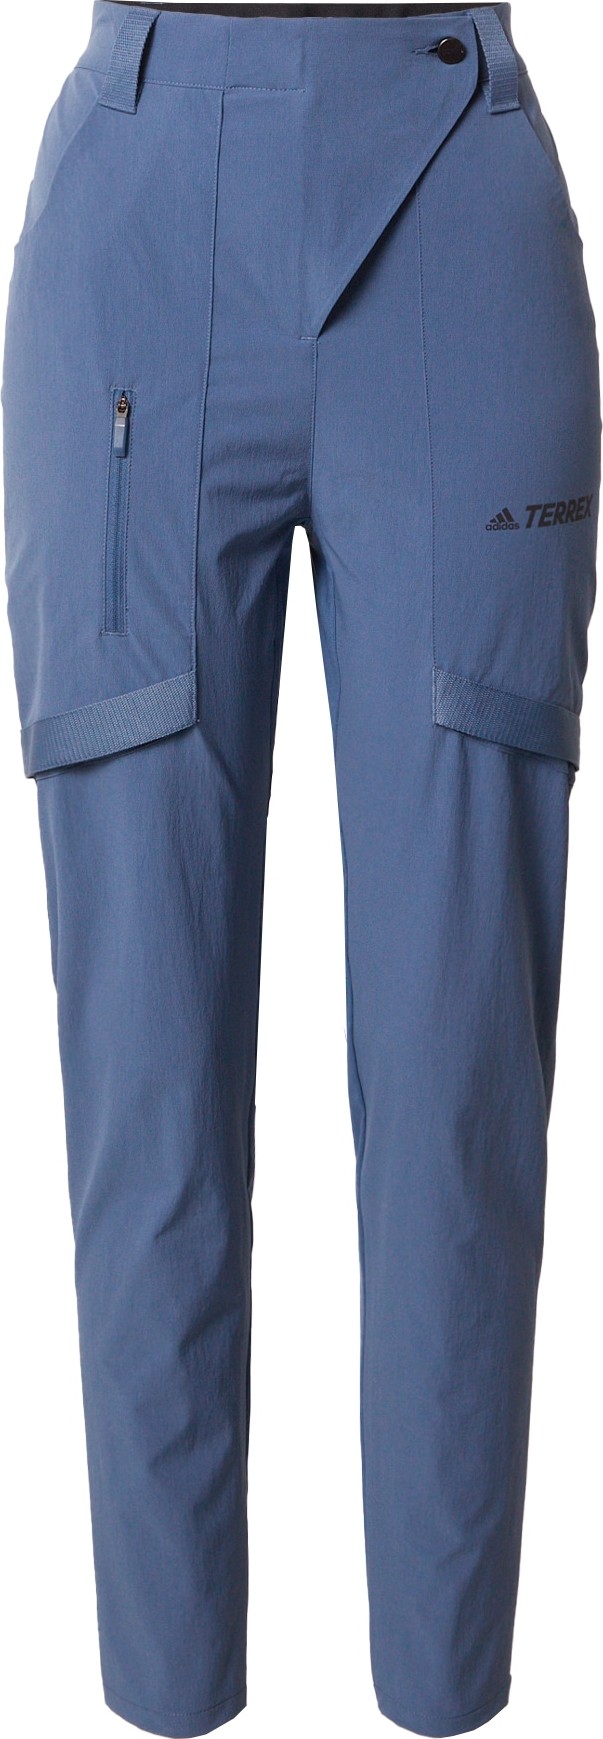 ADIDAS TERREX Outdoorové kalhoty 'Zupahike' fialkově modrá / černá